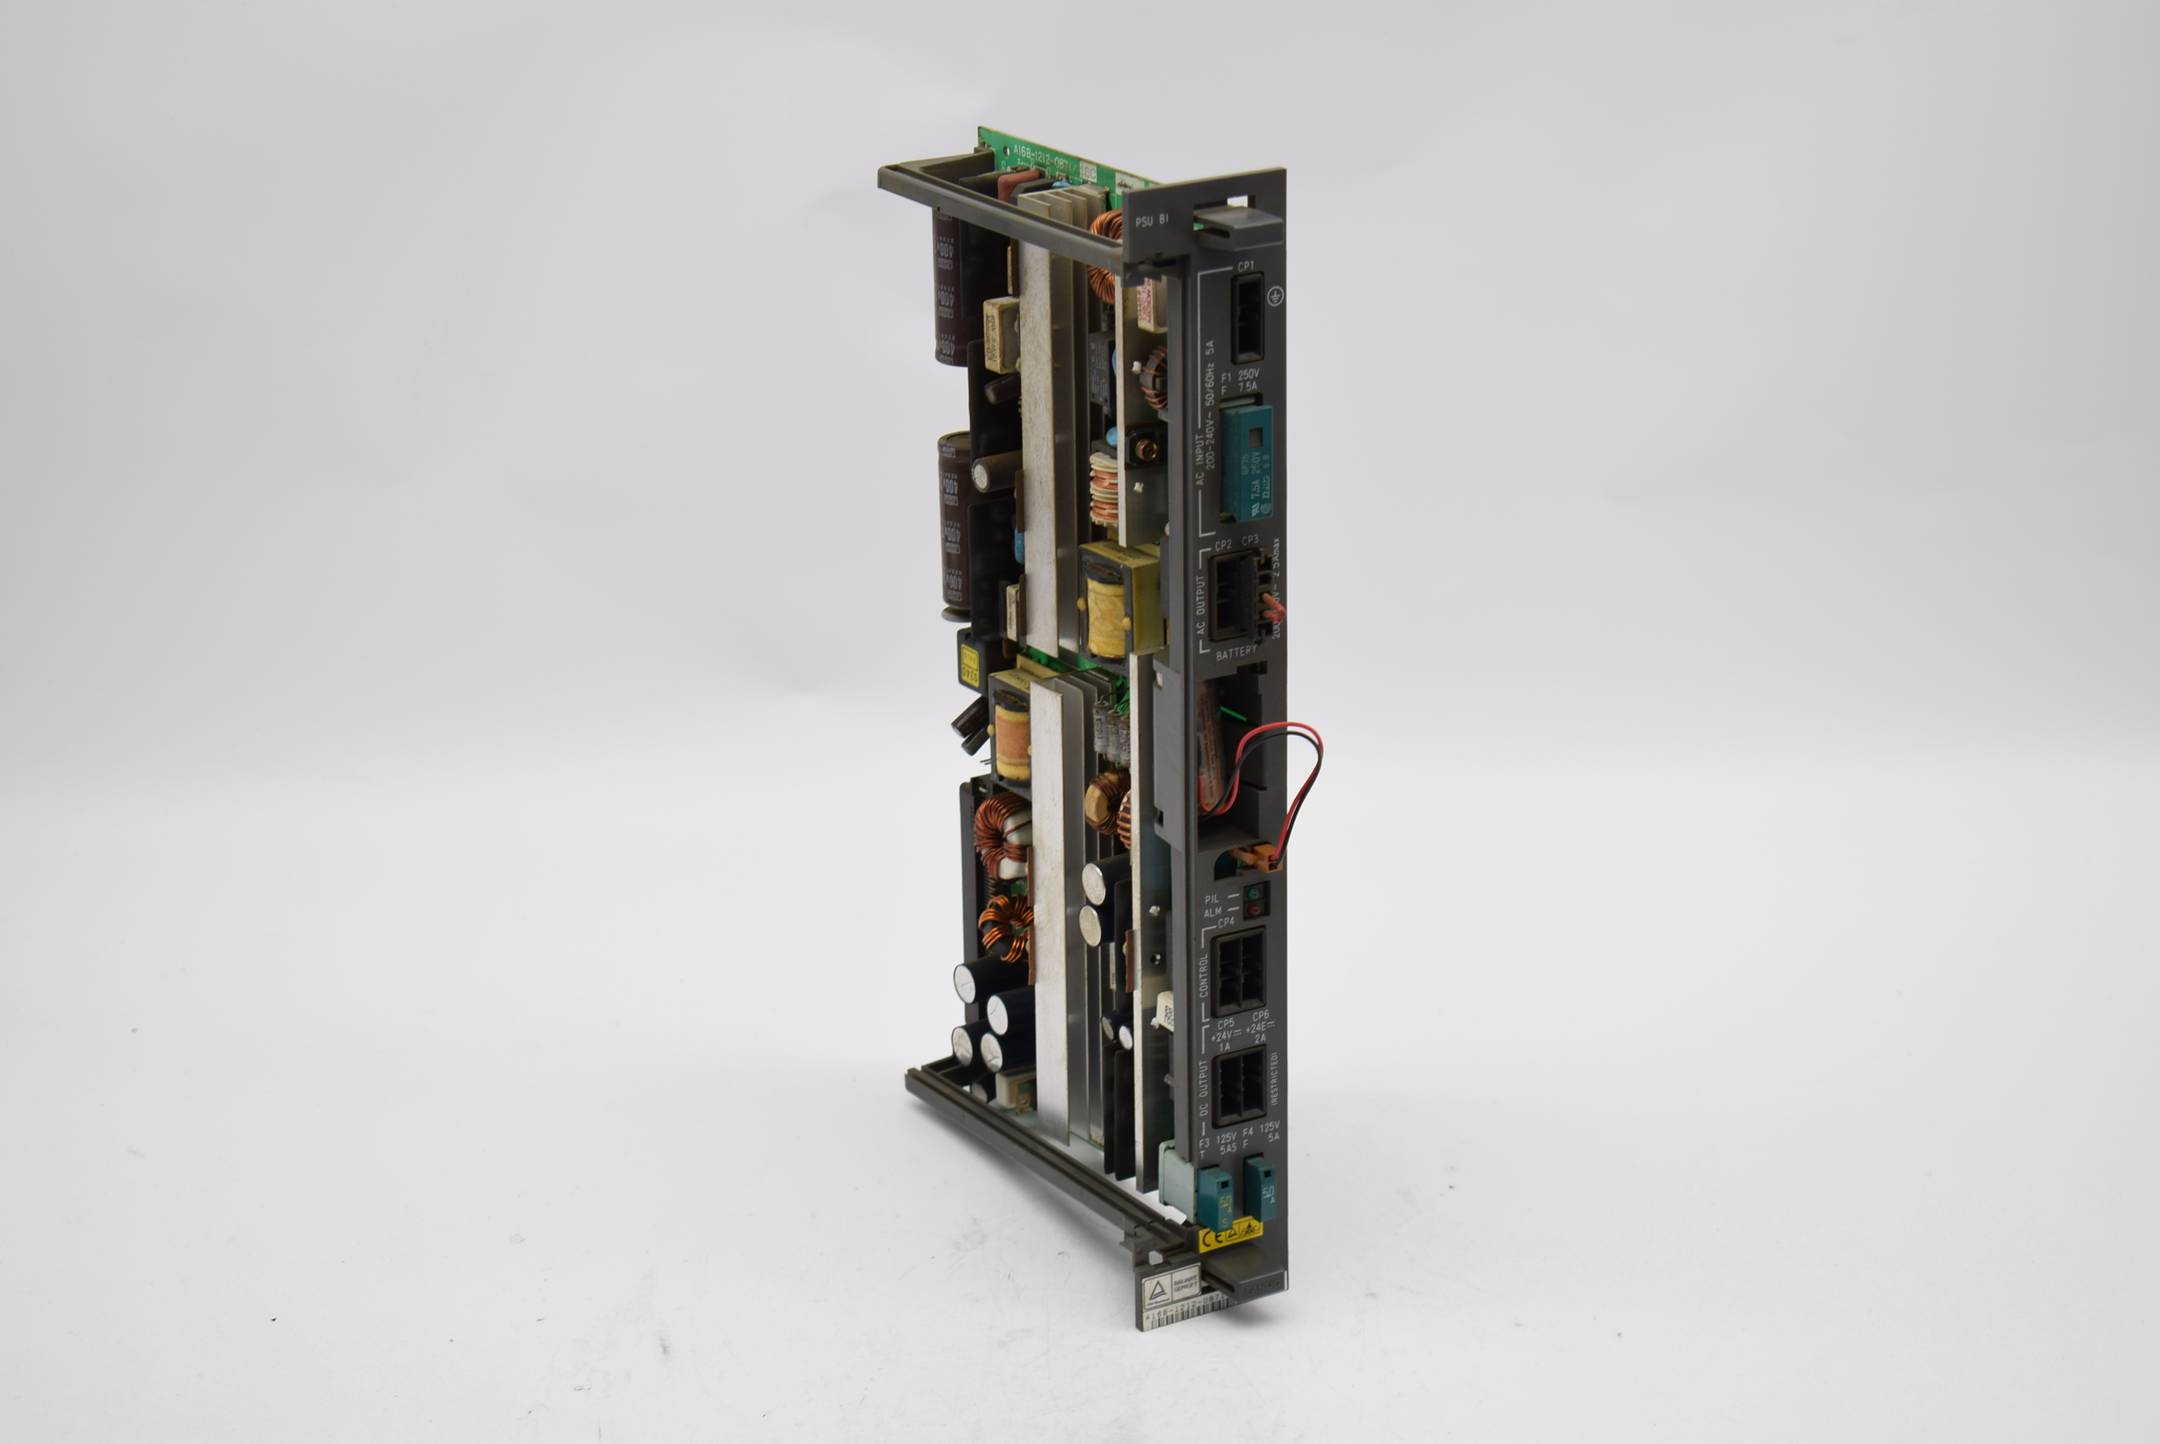 Fanuc Stromversorgung module A16B-1212-0871/16C ( 16C814505 )